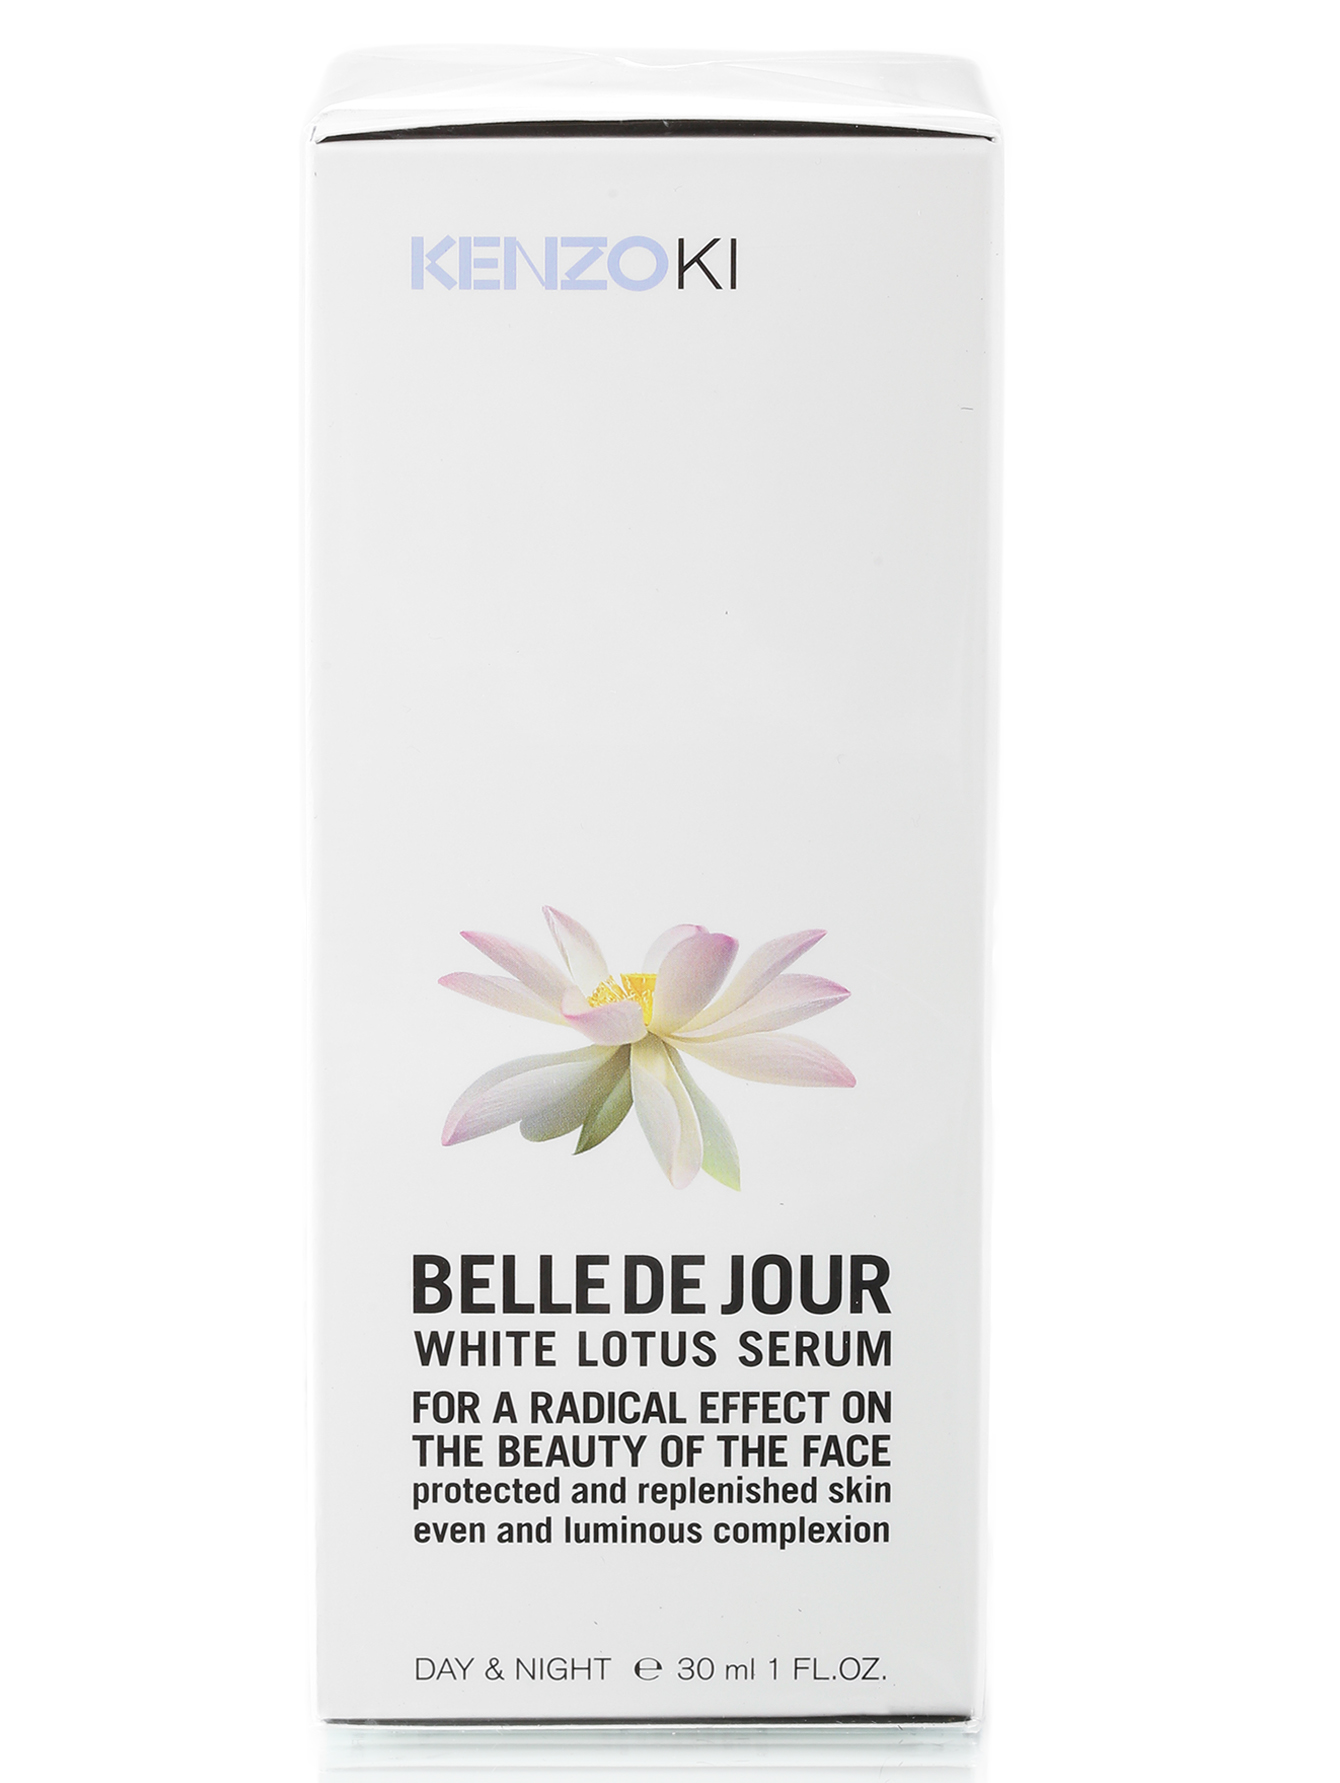 Сыворотка для лица Белого лотоса -  Kenzoki belle de jour, 30ml - Модель Верх-Низ